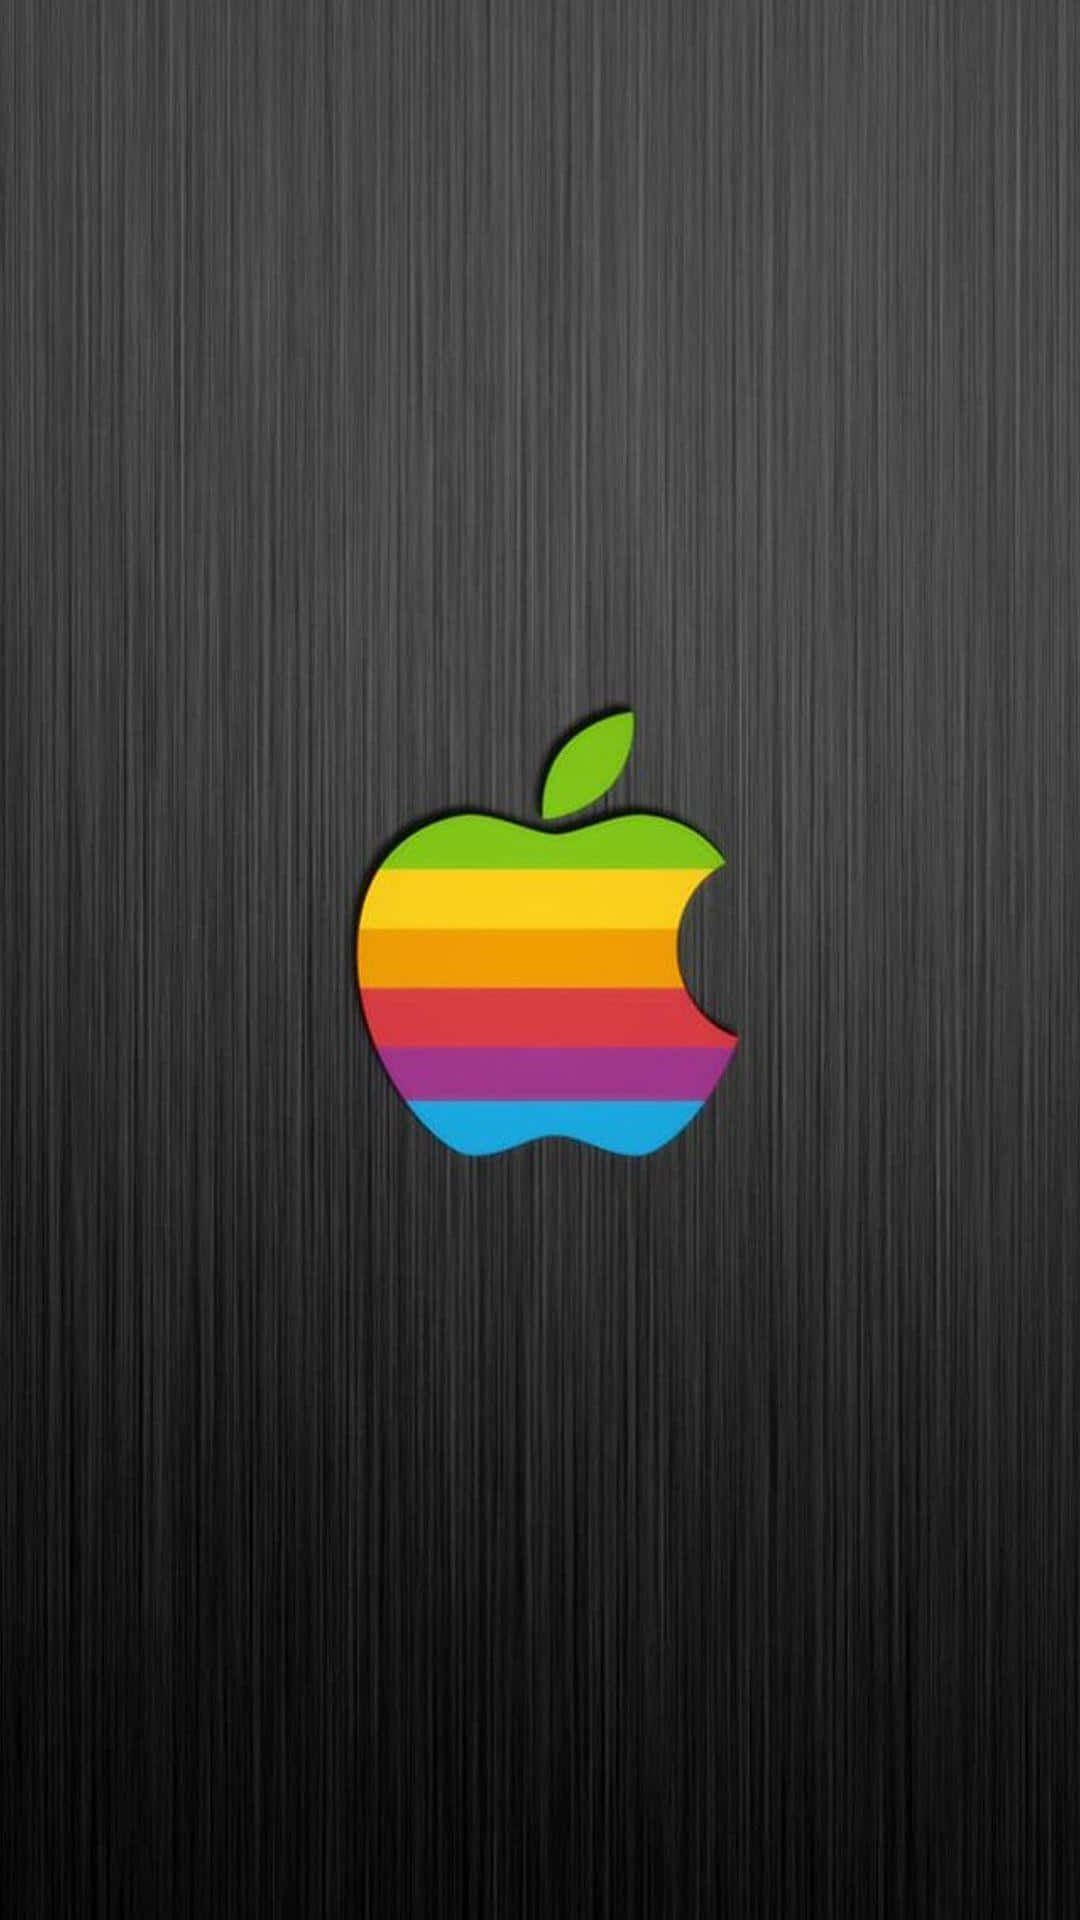 Pixel3 Sfondo Con Texture Di Legno E Logo Di Apple